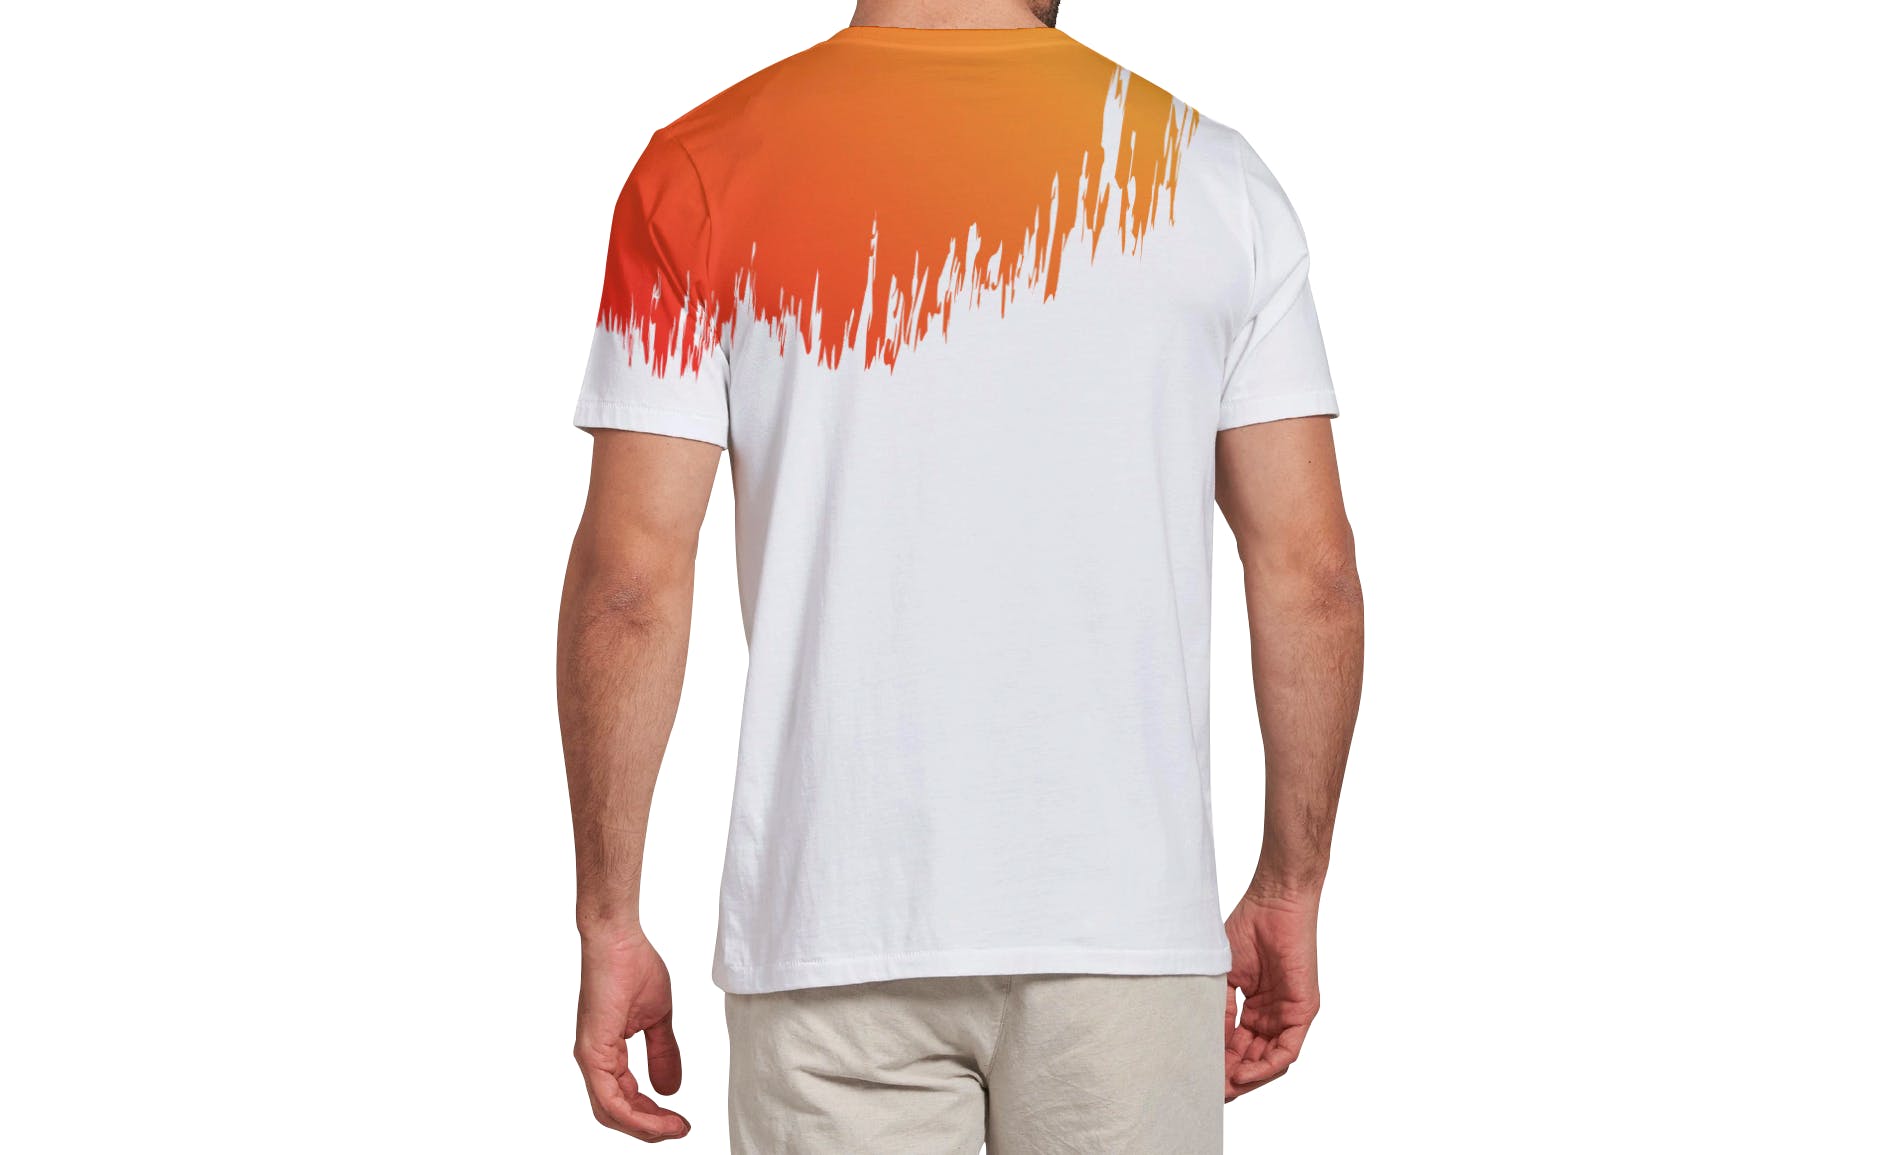 男士T恤印花设计效果图样机第一素材精选v03 T-shirt Mockup Vol 03插图(13)